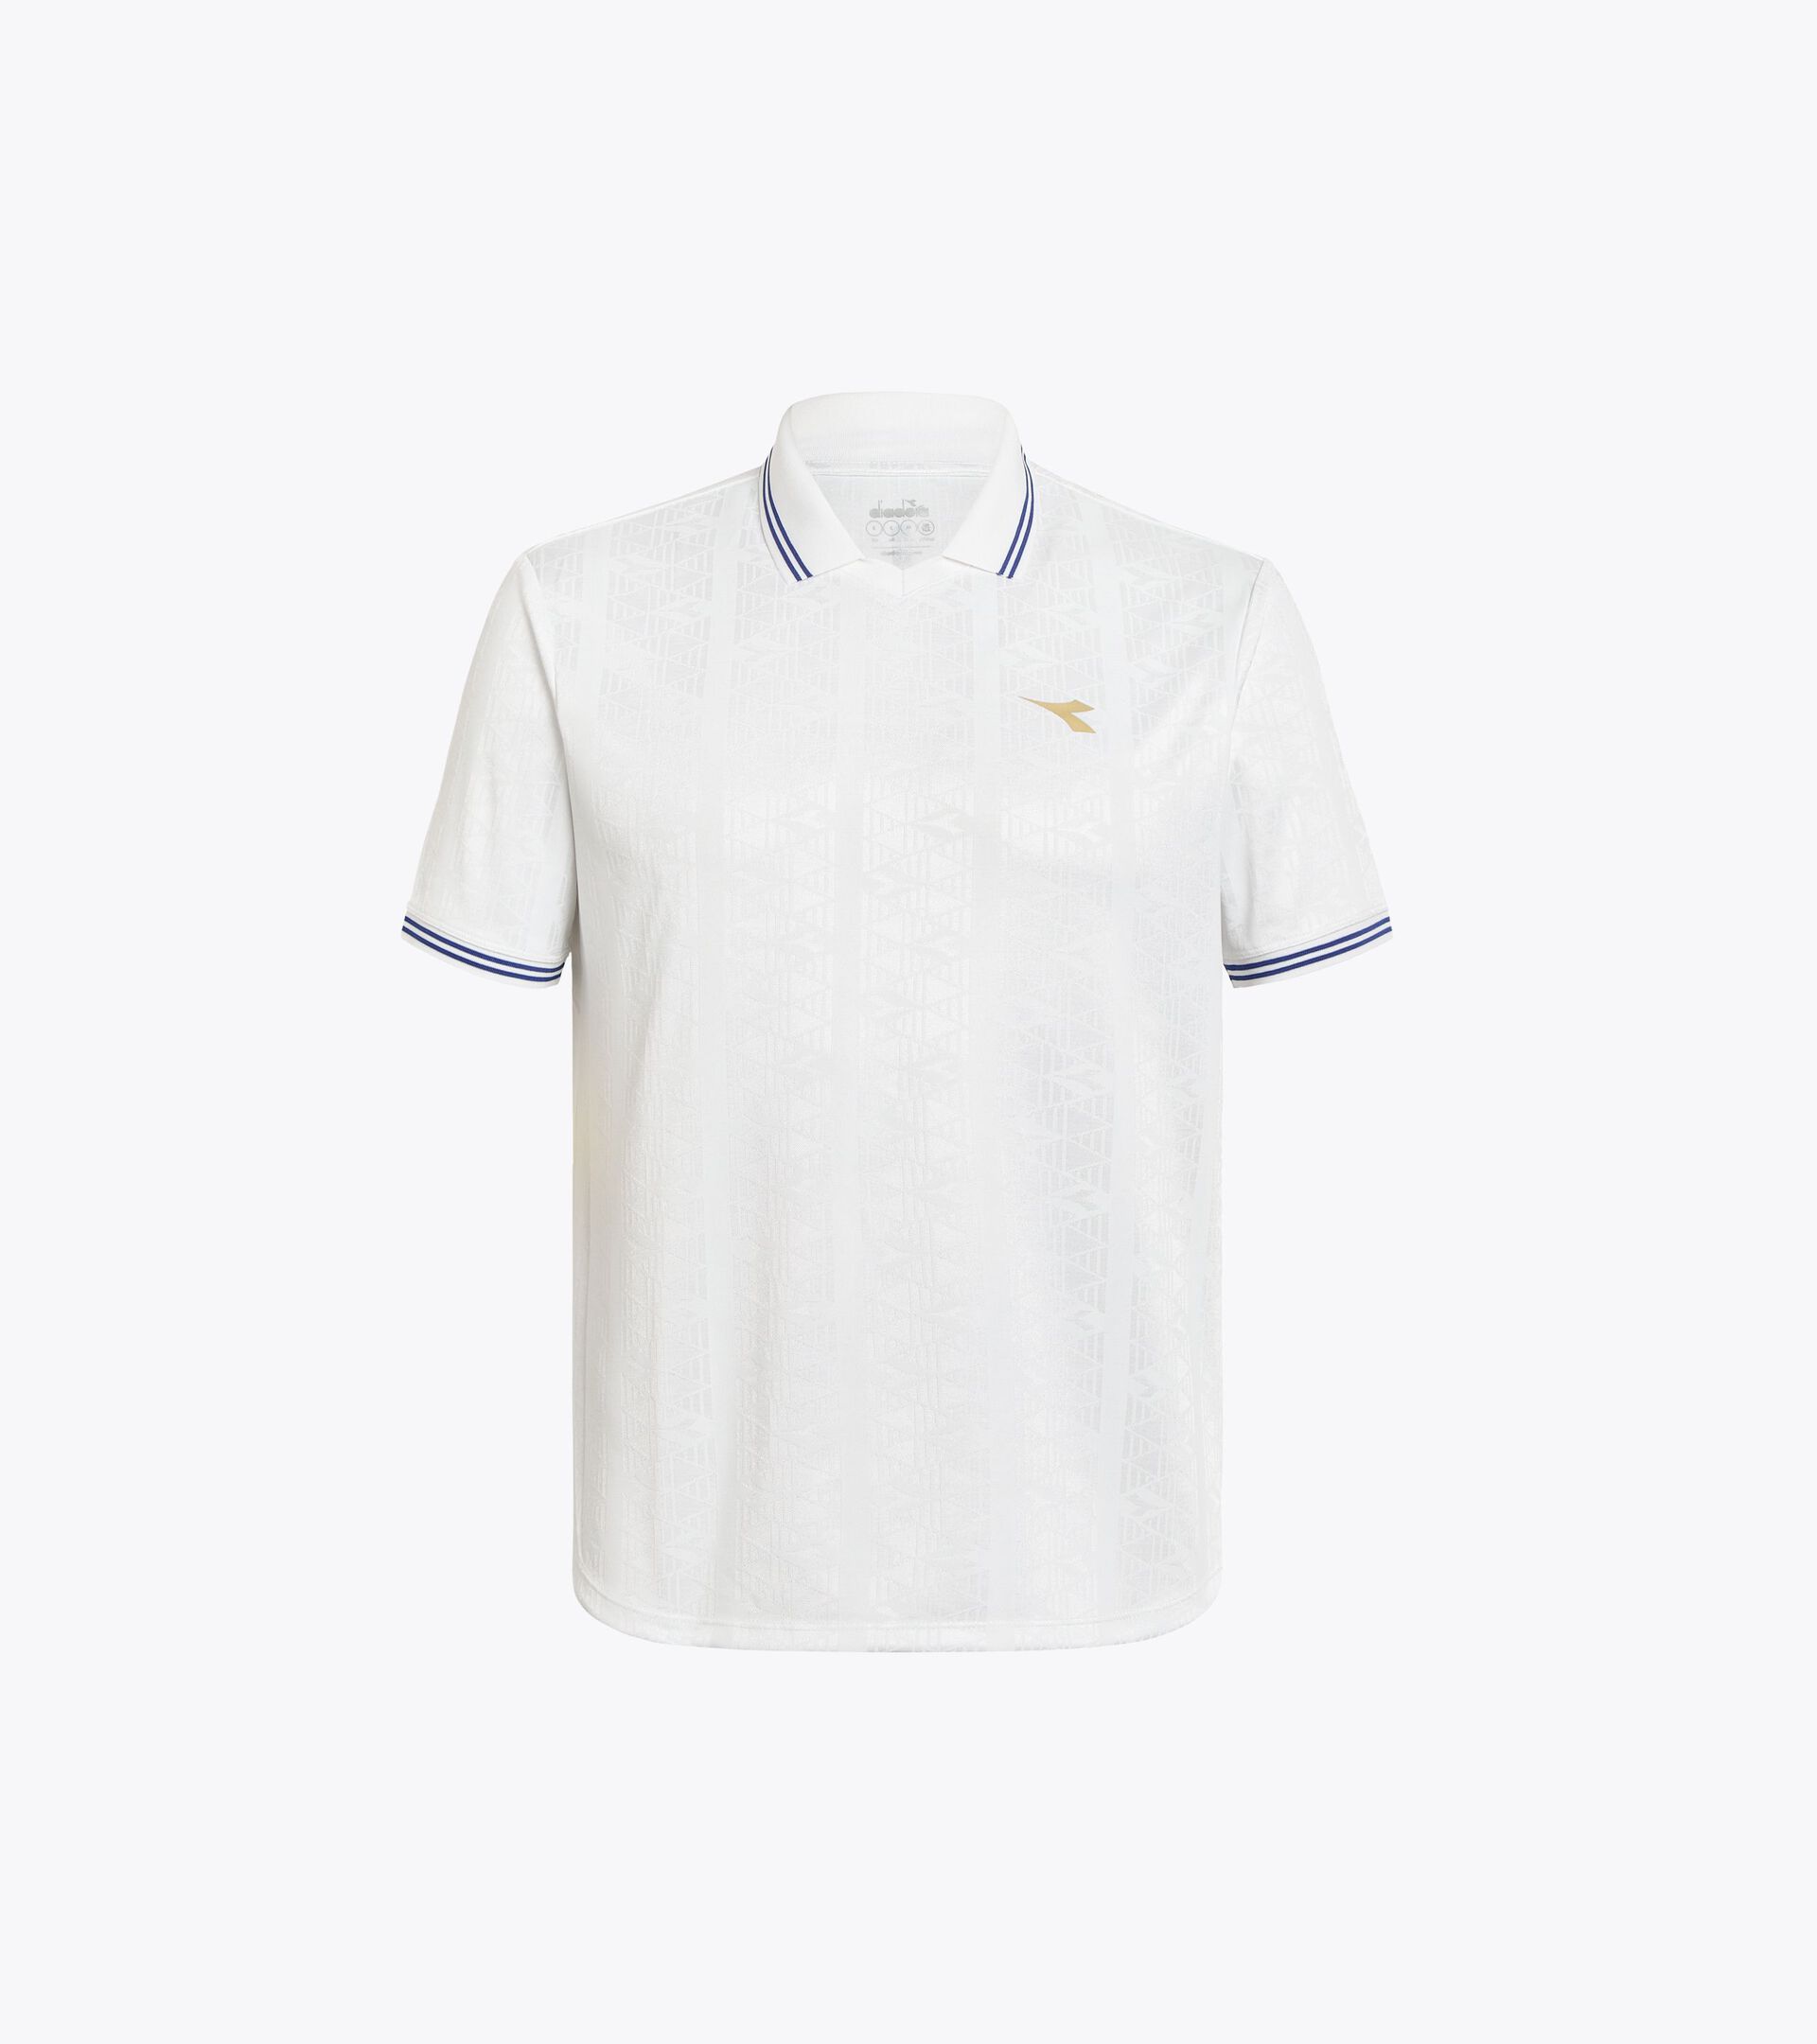 90s-inspired calcio shirt - Gender neutral
 MATCH SHIRT SCUDETTO OPTICAL WHITE - Diadora